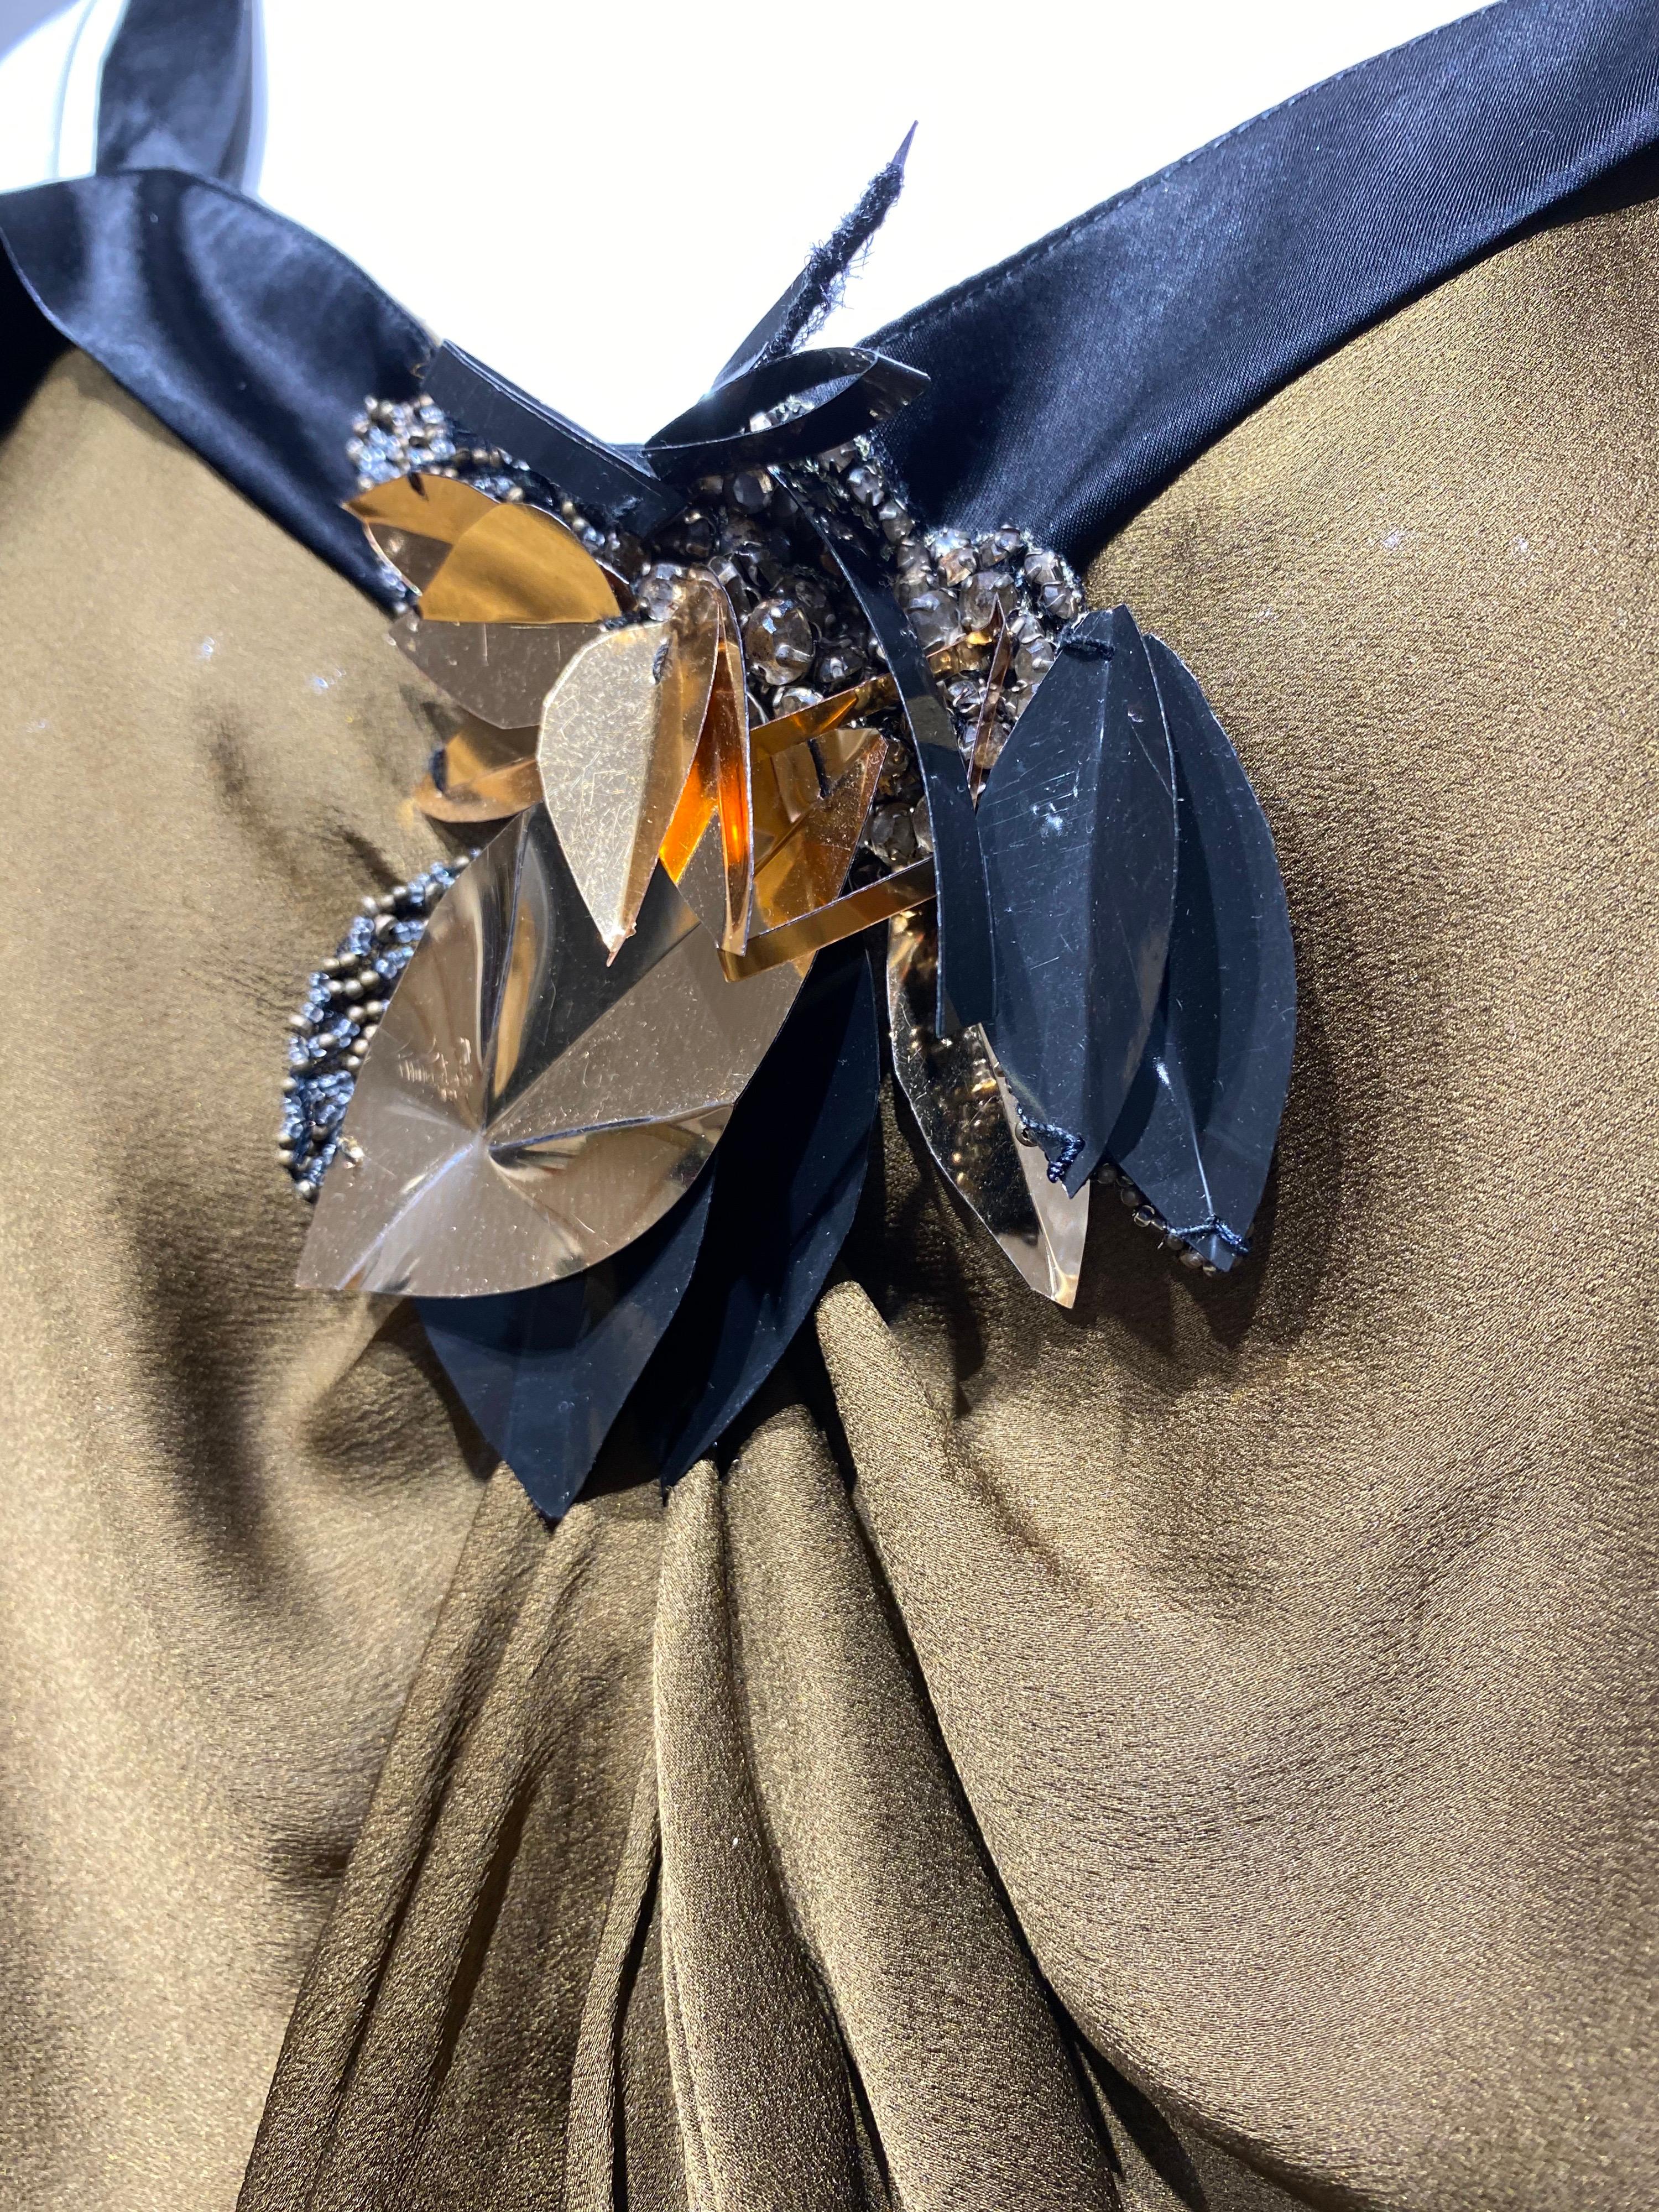 Lanvin by Alber Elbaz Braunes Seidencocktailkleid mit schwarzem Spaghettiträger.
Kleid Tropfen Taille Verschluss, der einstellbar ist.\
Passform Größe Small- Medium ( 2/4/6)